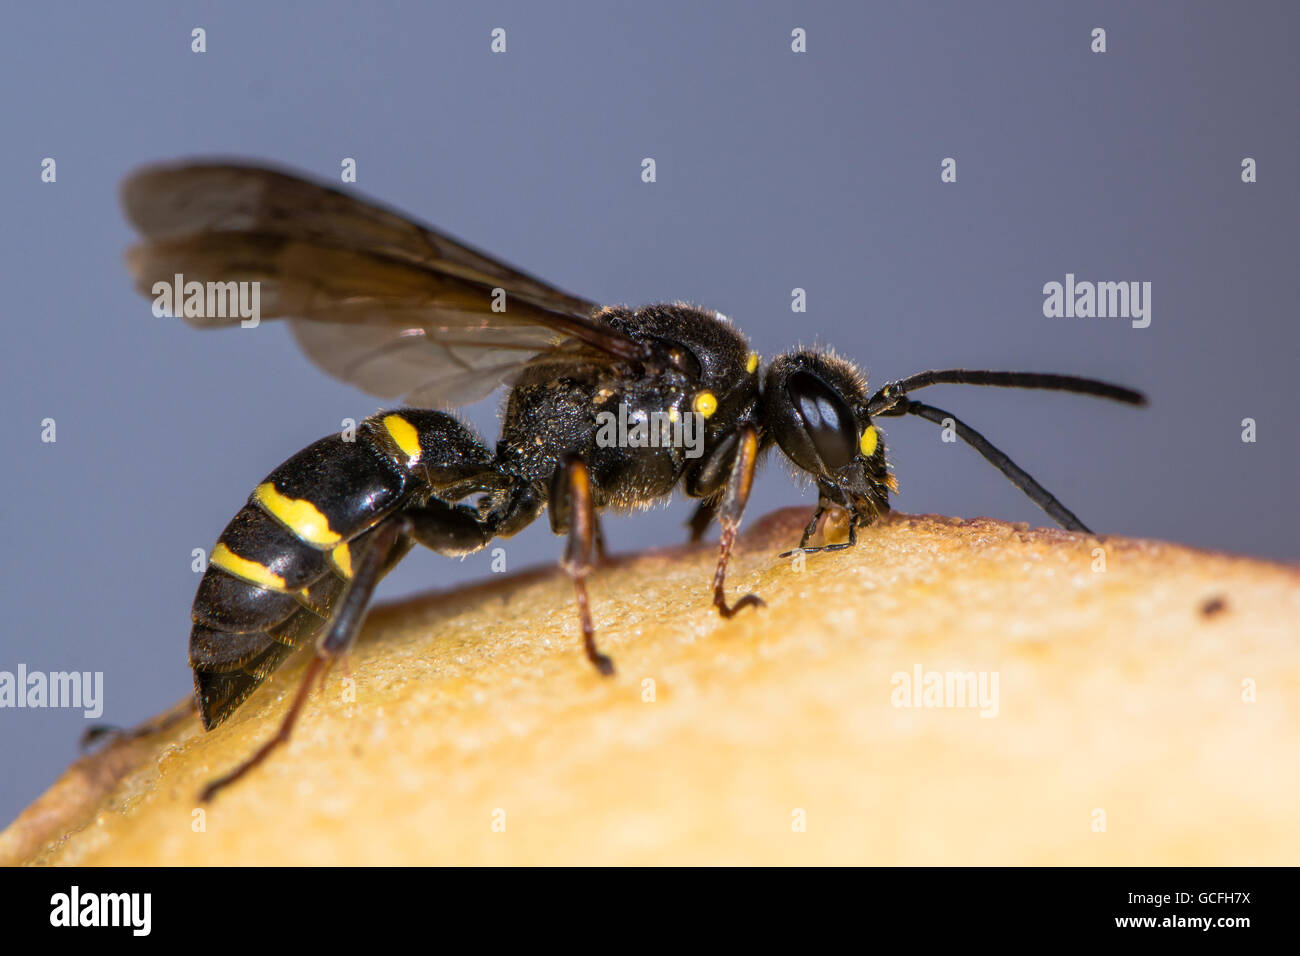 Digger wasp (Argogorytes mystaceus) délicieux. Insecte noir et jaune en famille Crabronidae, se nourrissant de fruits Banque D'Images